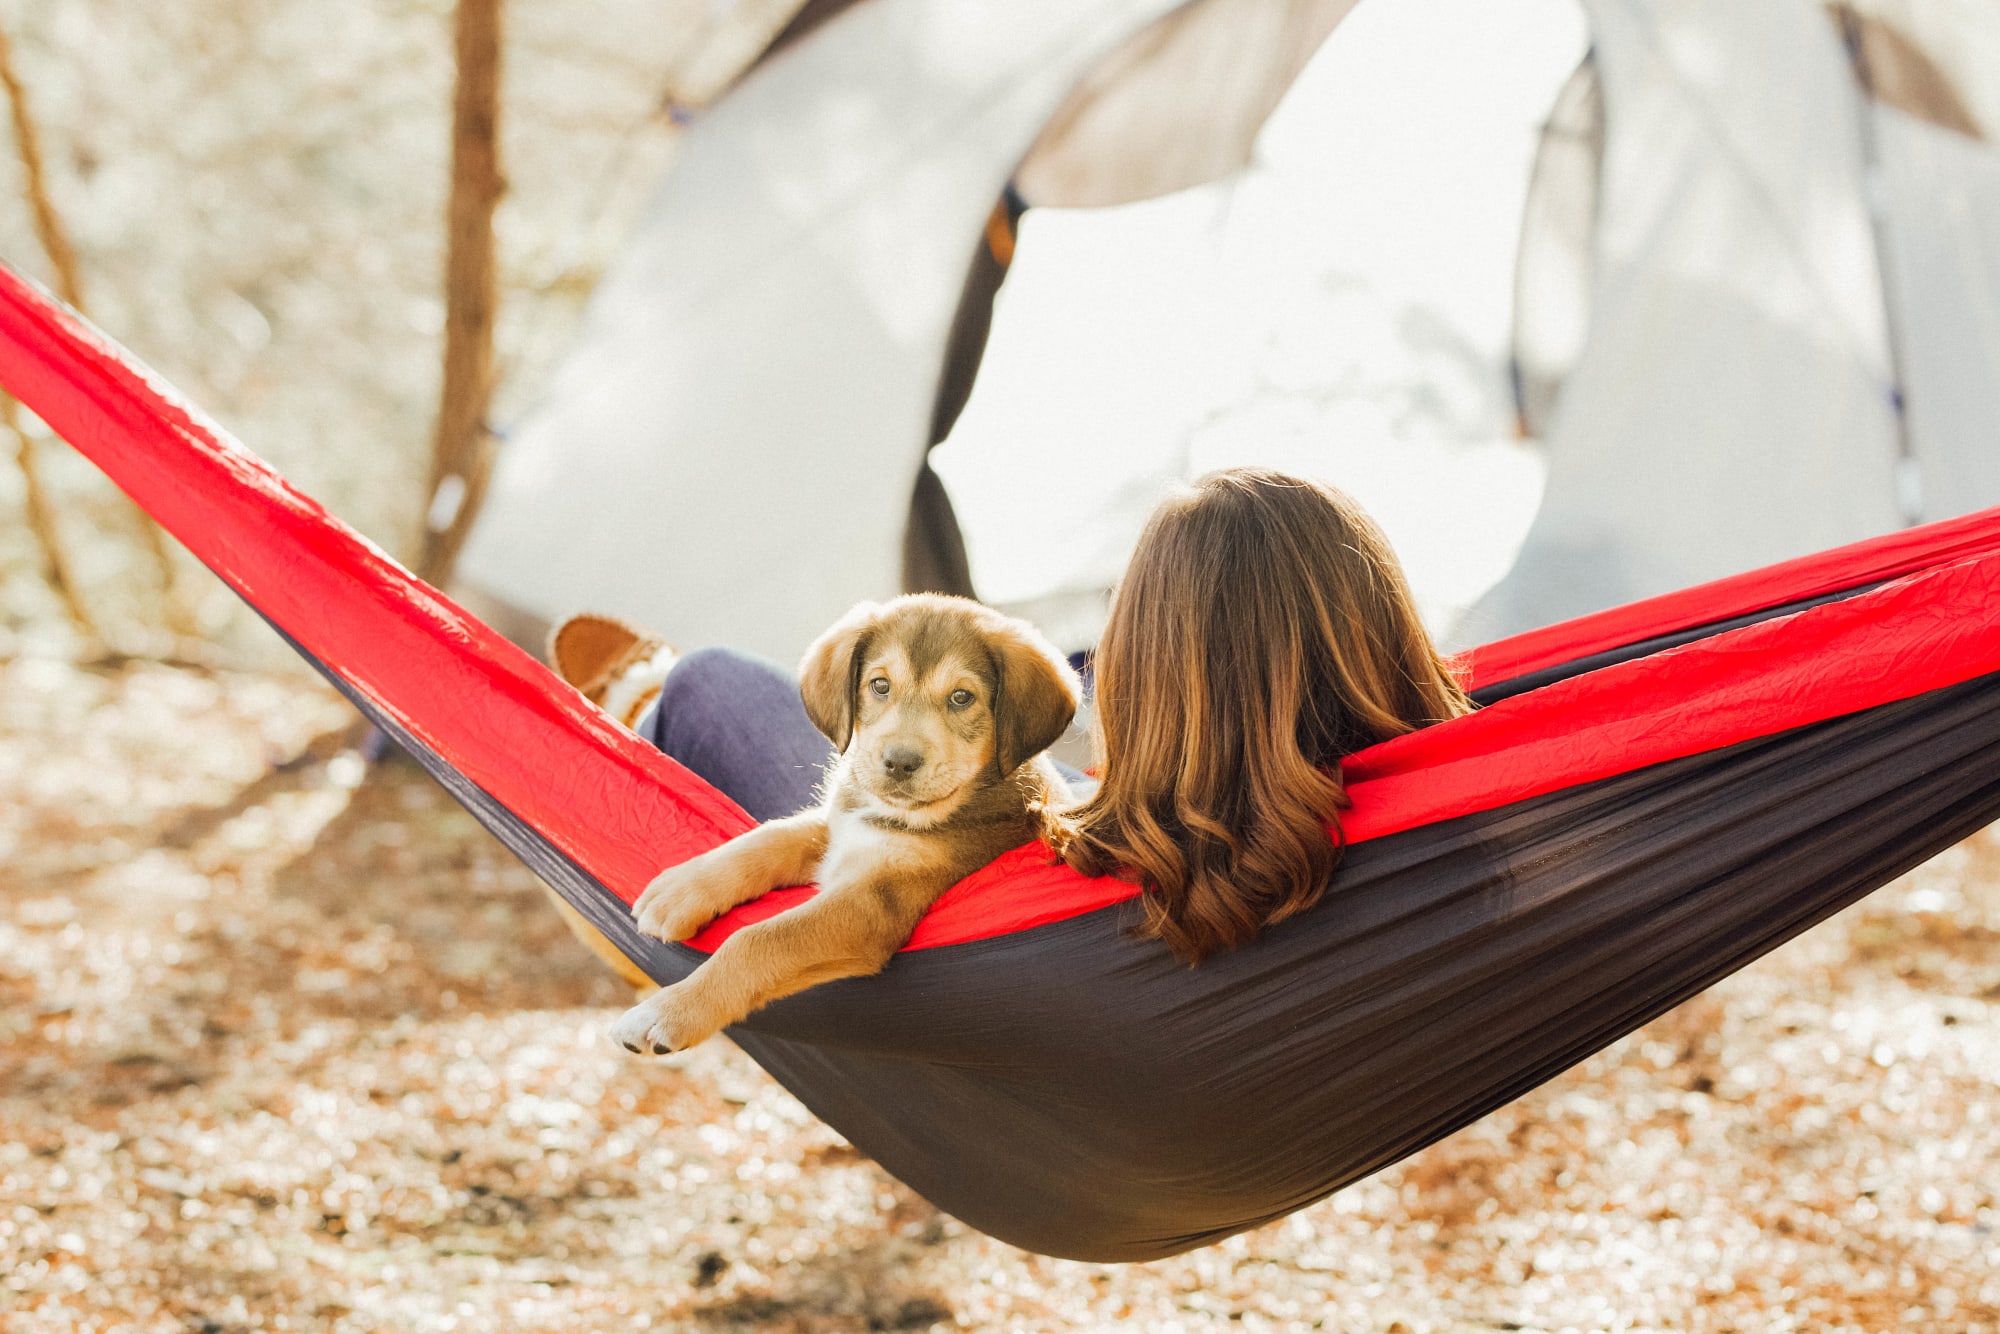 Take Your Pet Camping!